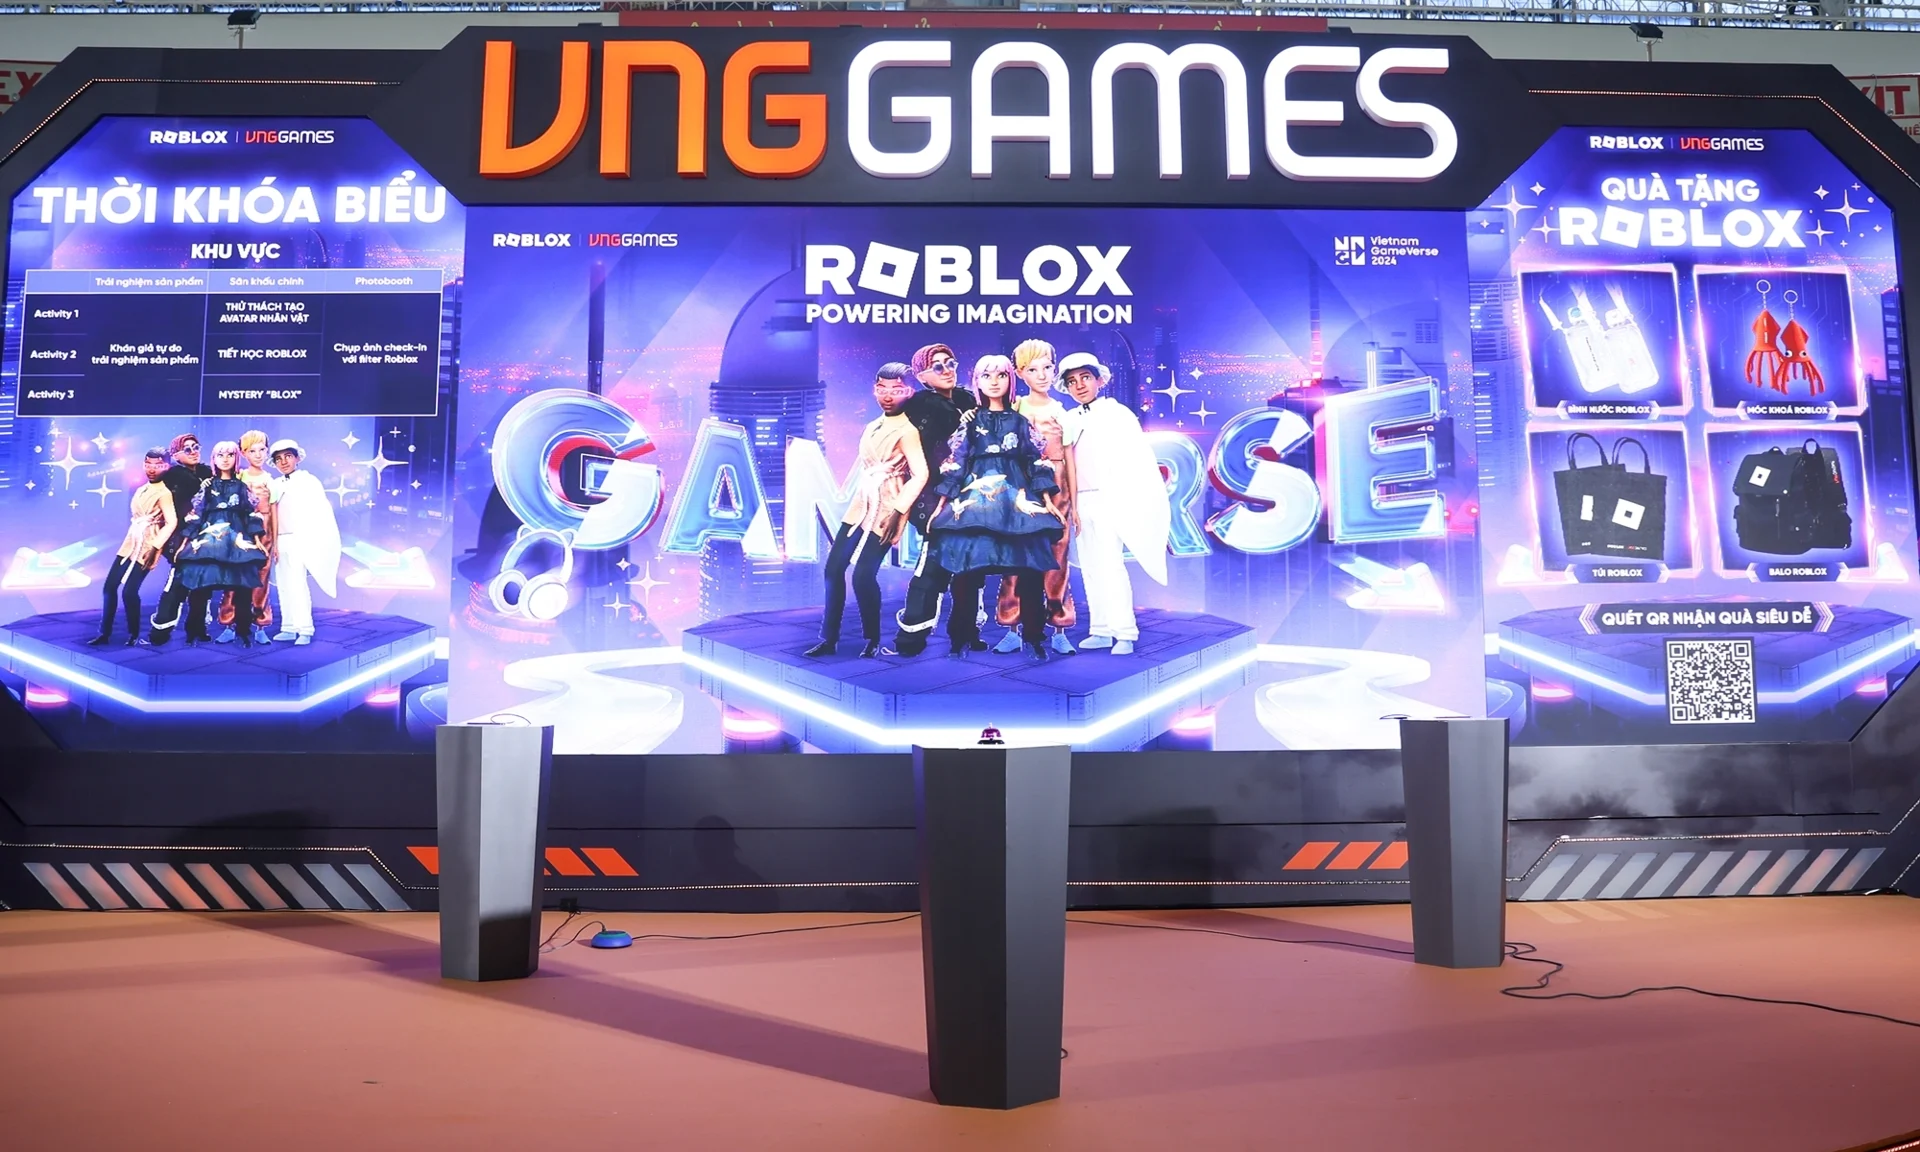 Roblox chính thức được phát hành tại Việt Nam thông qua VNG